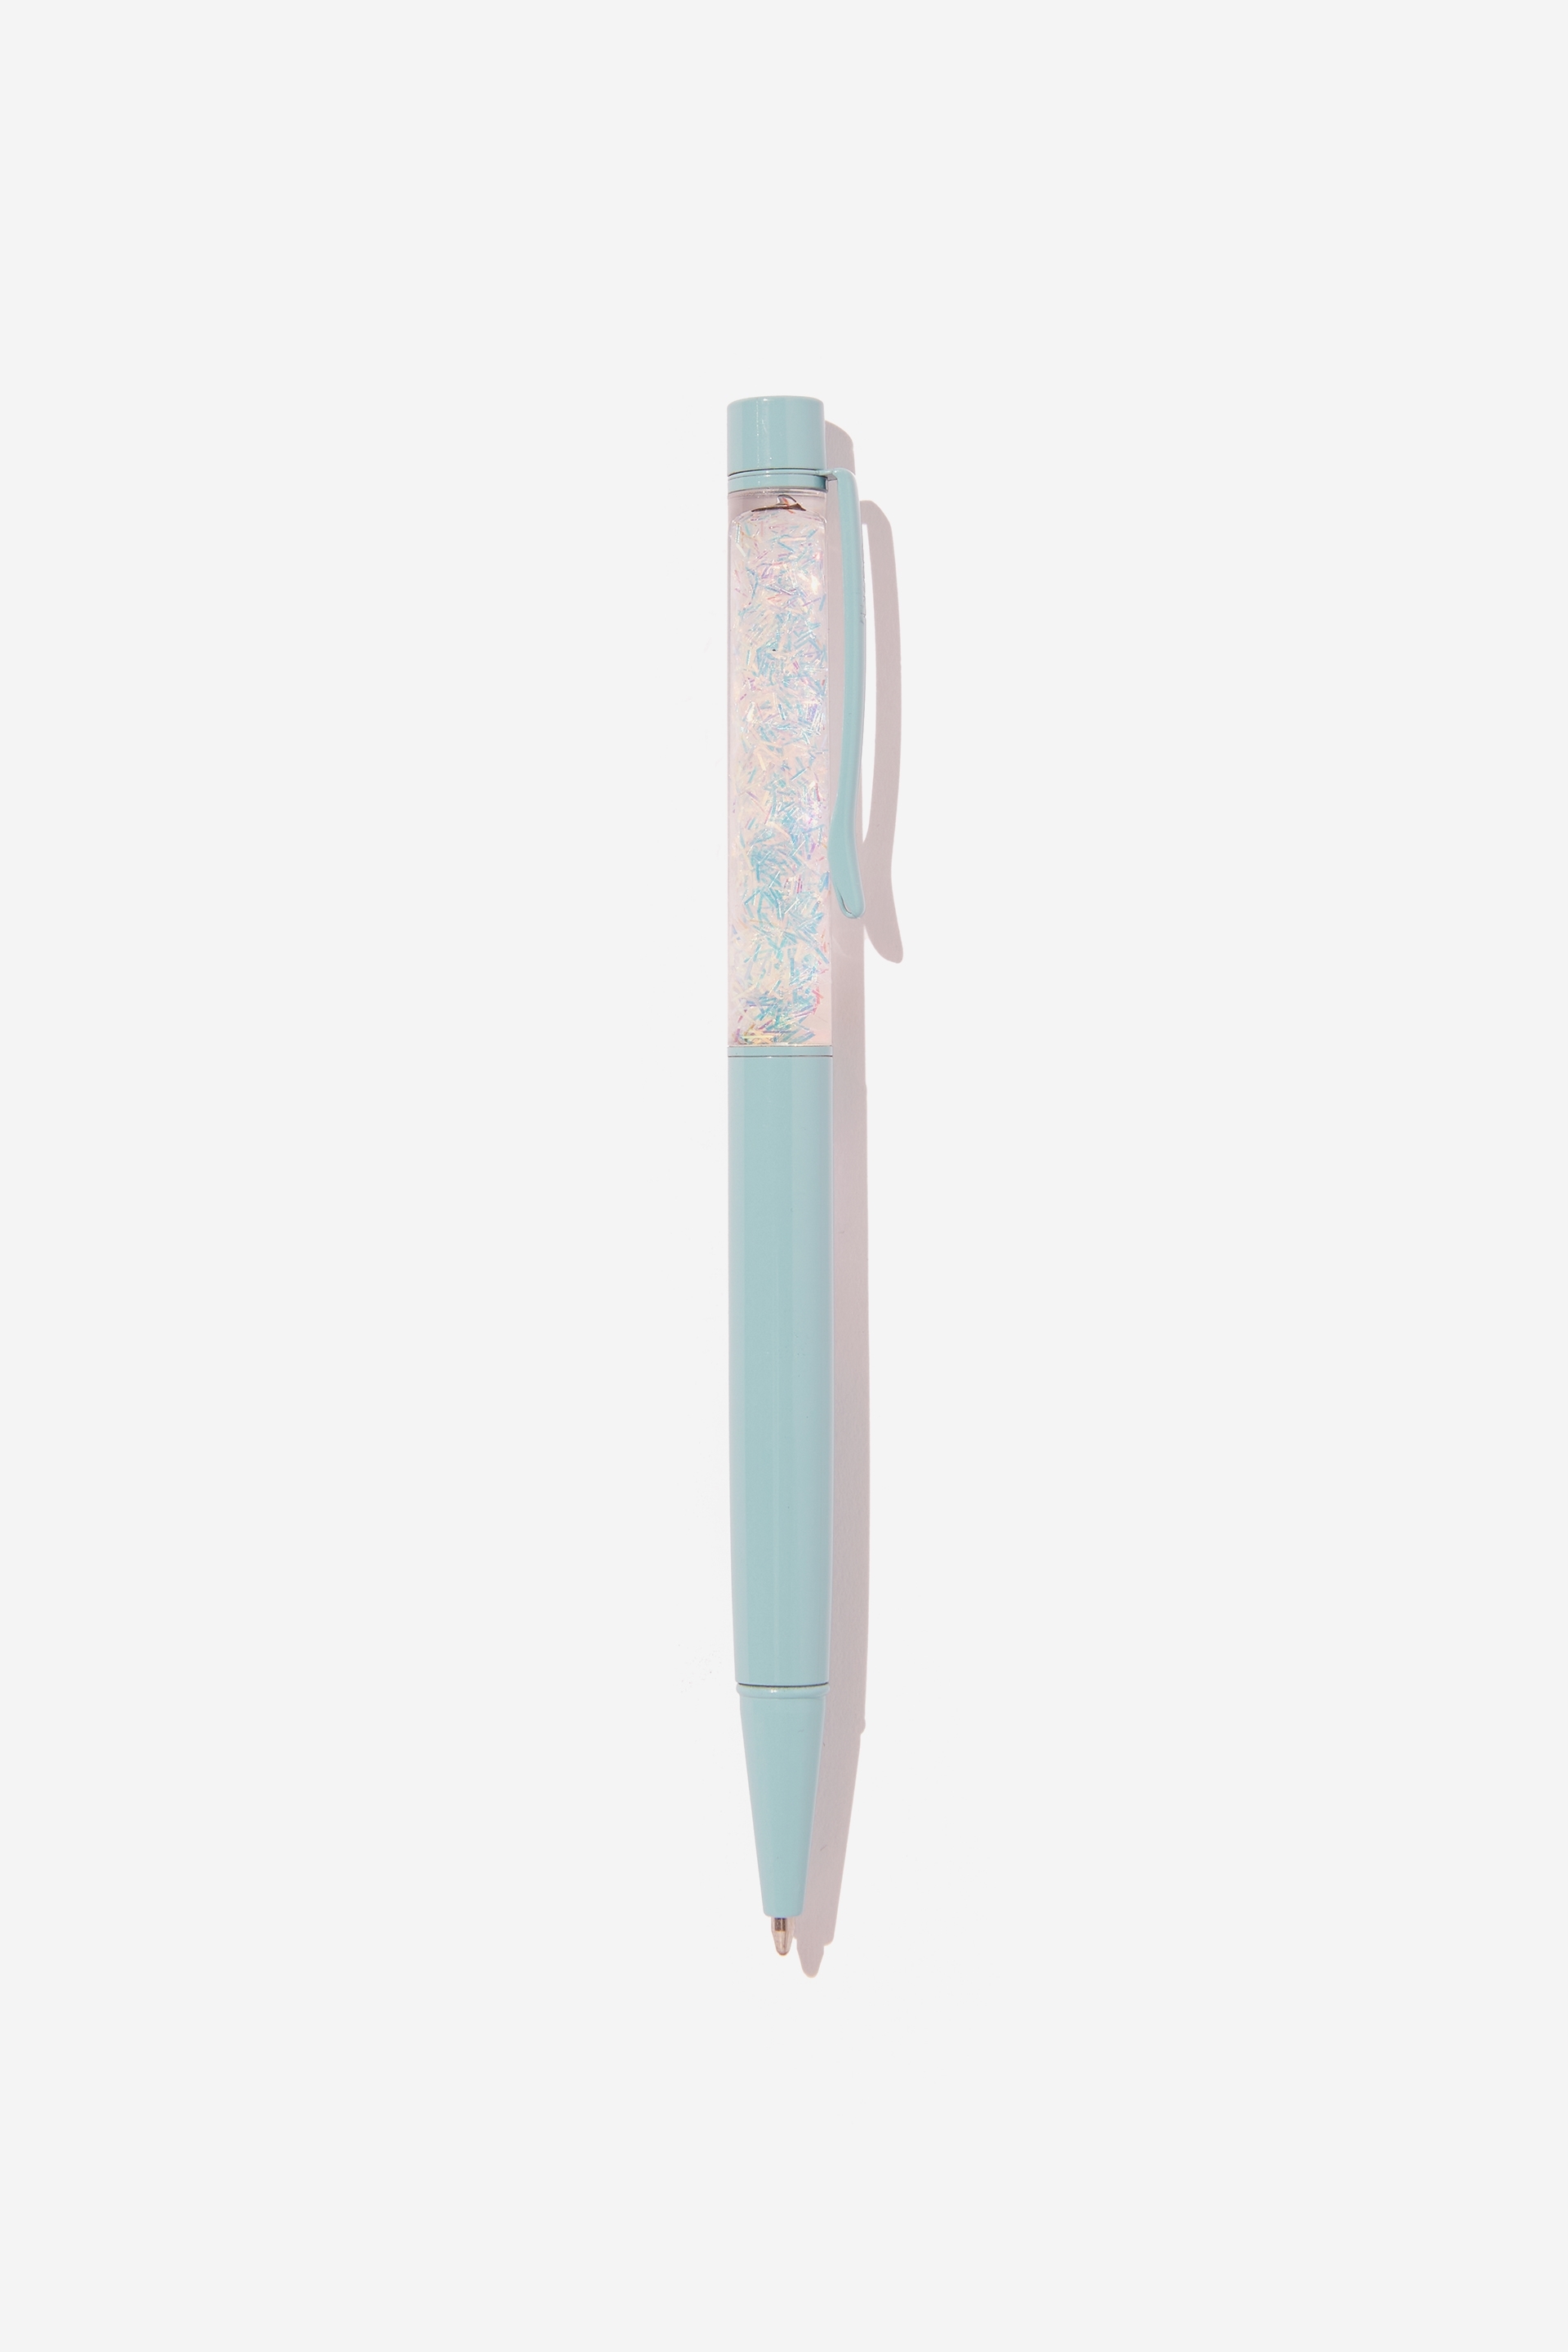 Typo - Sparkle Ballpoint Pen - Minty skies